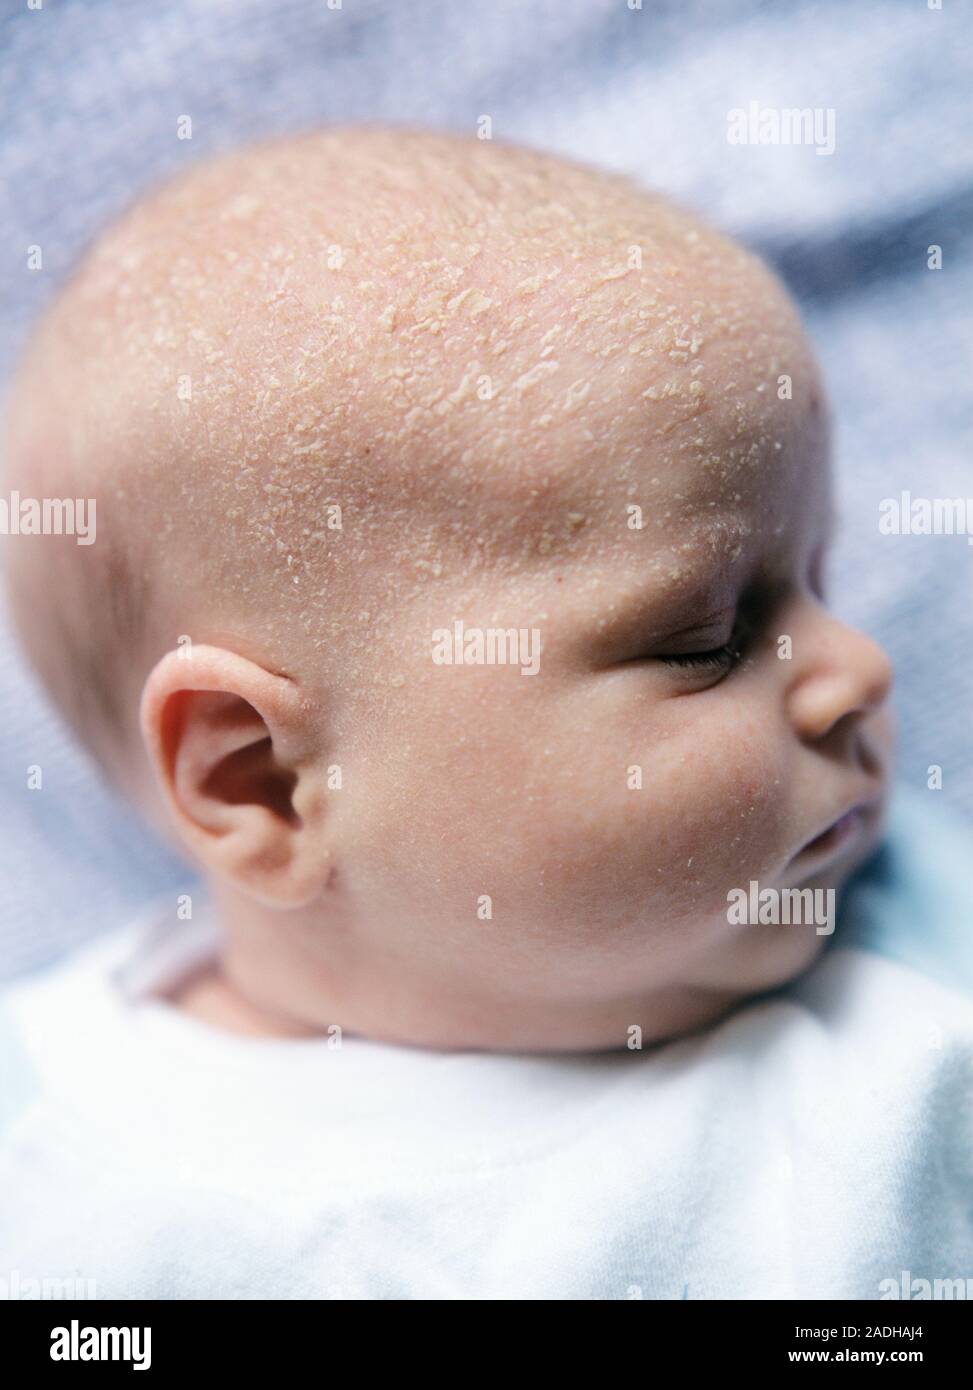 Modelo liberado. La costra láctea. Bebé recién nacido con costra láctea  (crusta lactea). Las escamas son grueso amarillo visto en parches alrededor  del cuero cabelludo del bebé. Cuna ca Fotografía de stock -